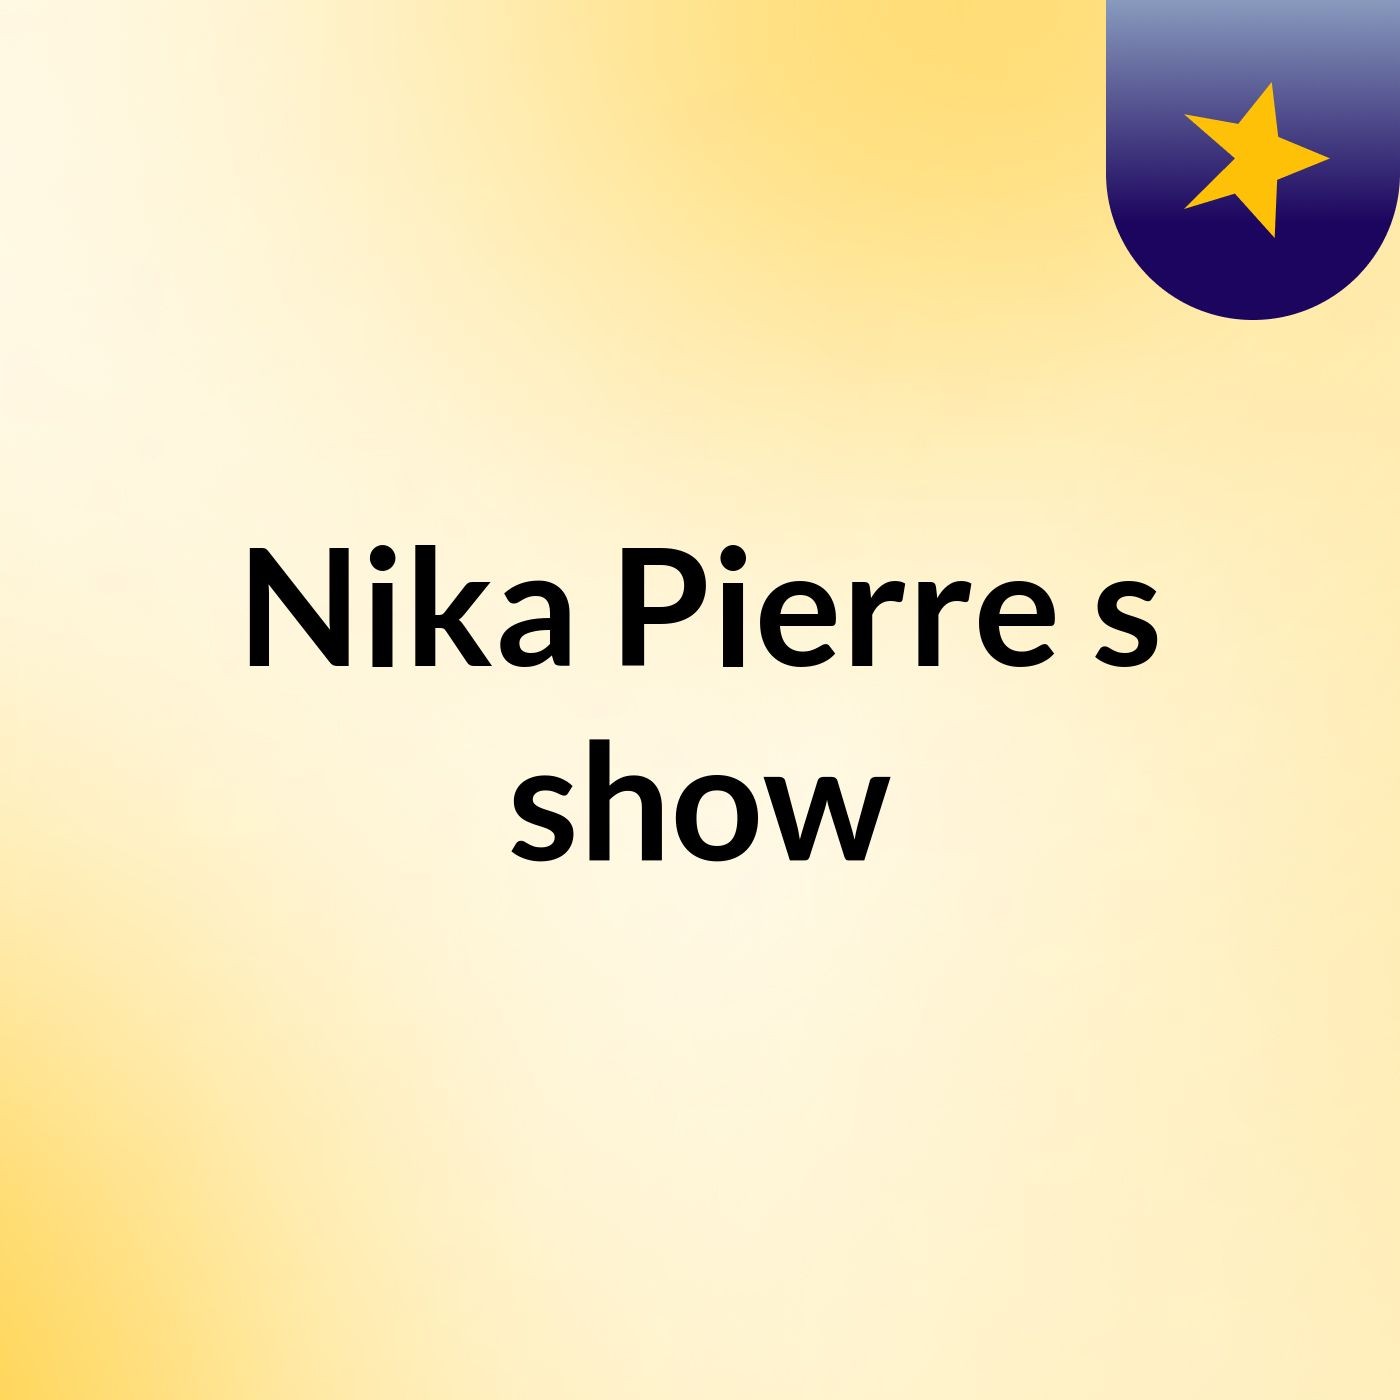 Nika Pierre's show